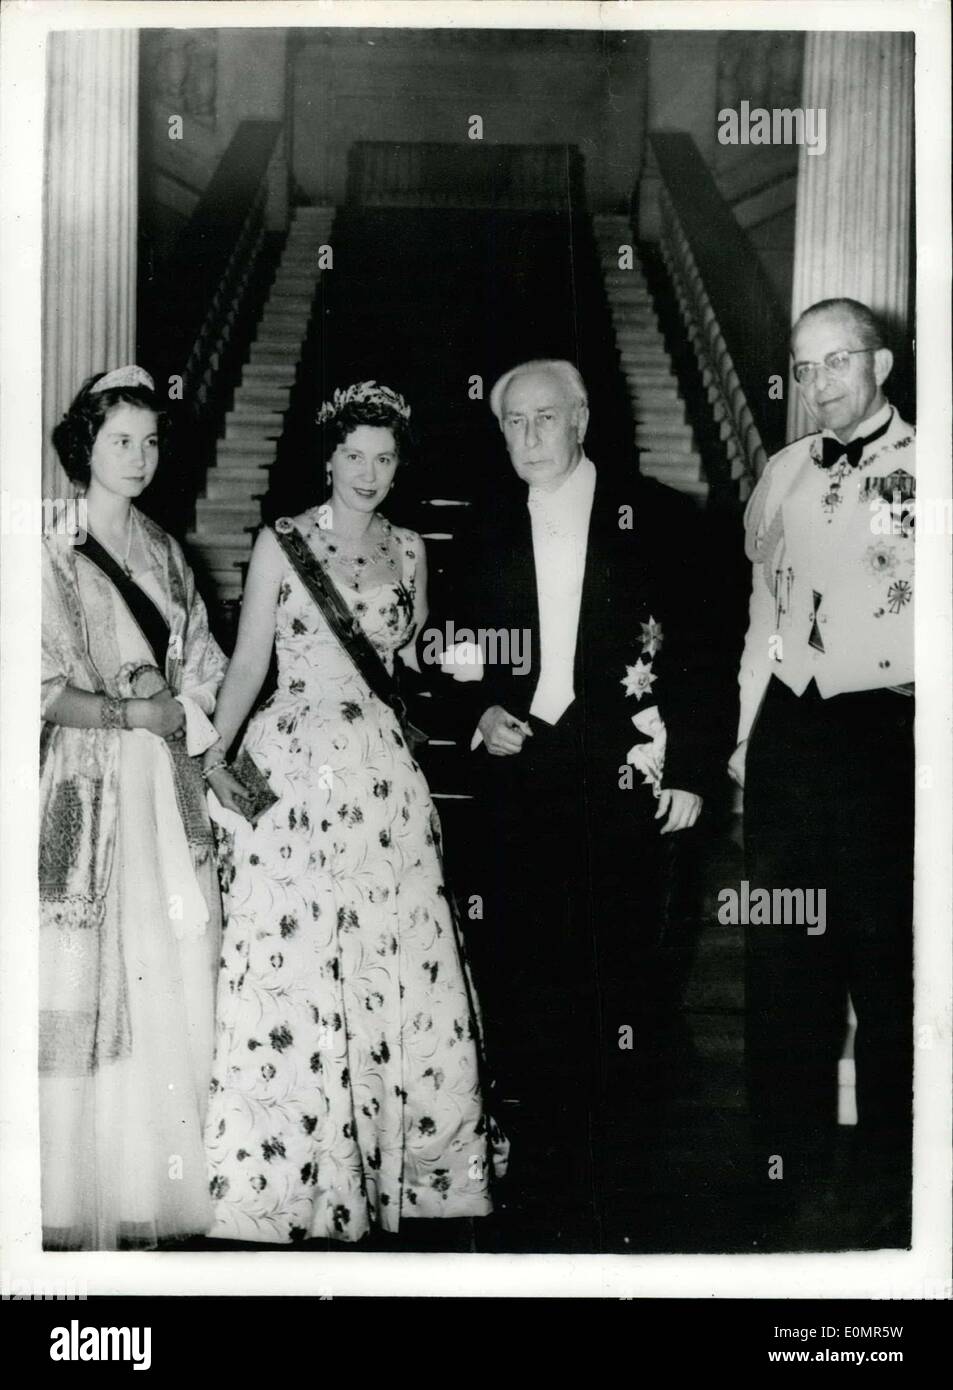 18 mai 1956 - Le Dr Heuss assiste à la réception au Palais Royal En Grèce : Le Dr Heuss, le président de l'Allemagne de l'Ouest, qui est en Grèce pour une visite officielle, a participé à une réception donnée par le roi Paul de l'Helleness au palais Royal en son honneur. Photo montre M. Heuss, le président de l'Allemagne de l'Ouest, en photo avec le roi Paul, la Reine Frederika, et leur fille, la Princesse Sophia, à la réception. Banque D'Images